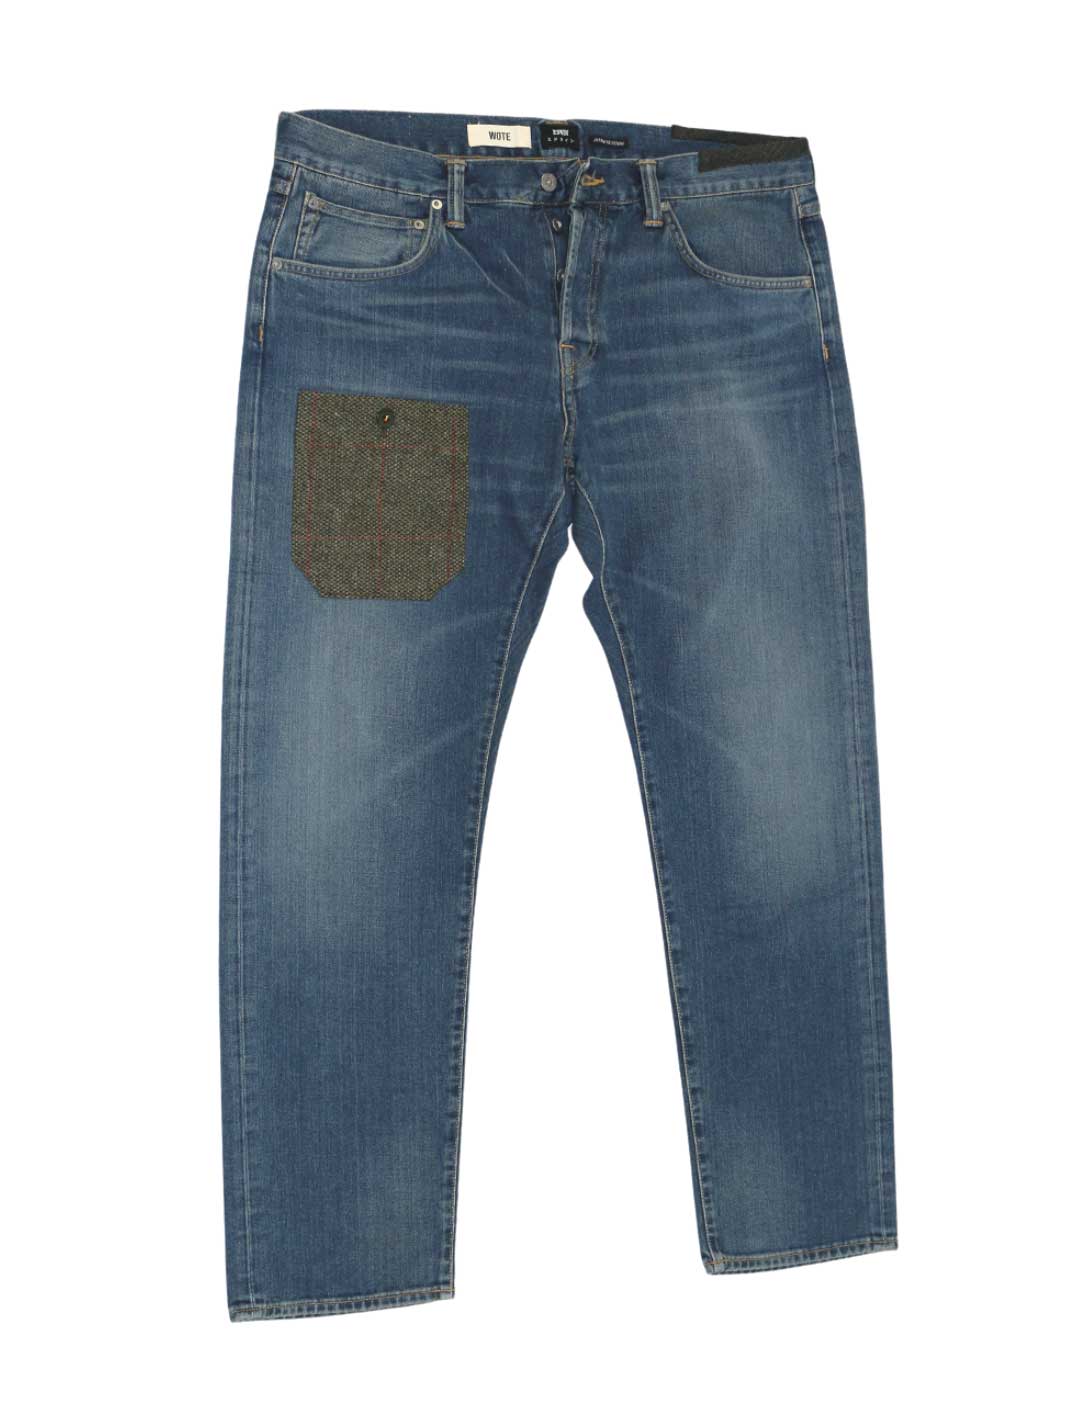 Männer upcycling Jeans mittelblaue Waschung Größe 38/32 mit einer aufgesetzten Tasche auf rechten Oberschenkel aus Tweed Stoff in Farbe olive